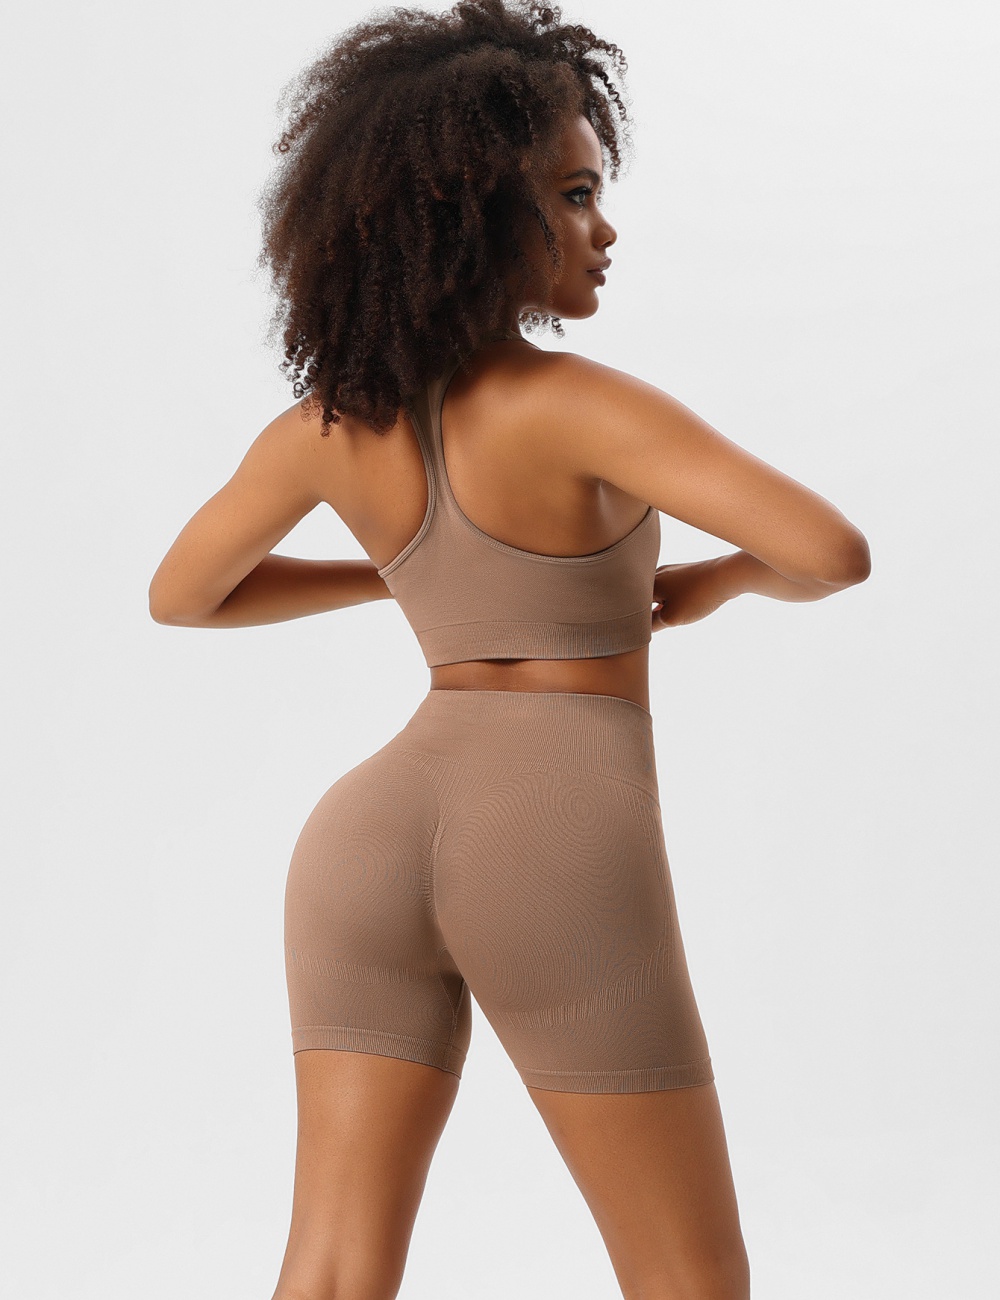 Yoga summer underwear shockproof Bra a set for women